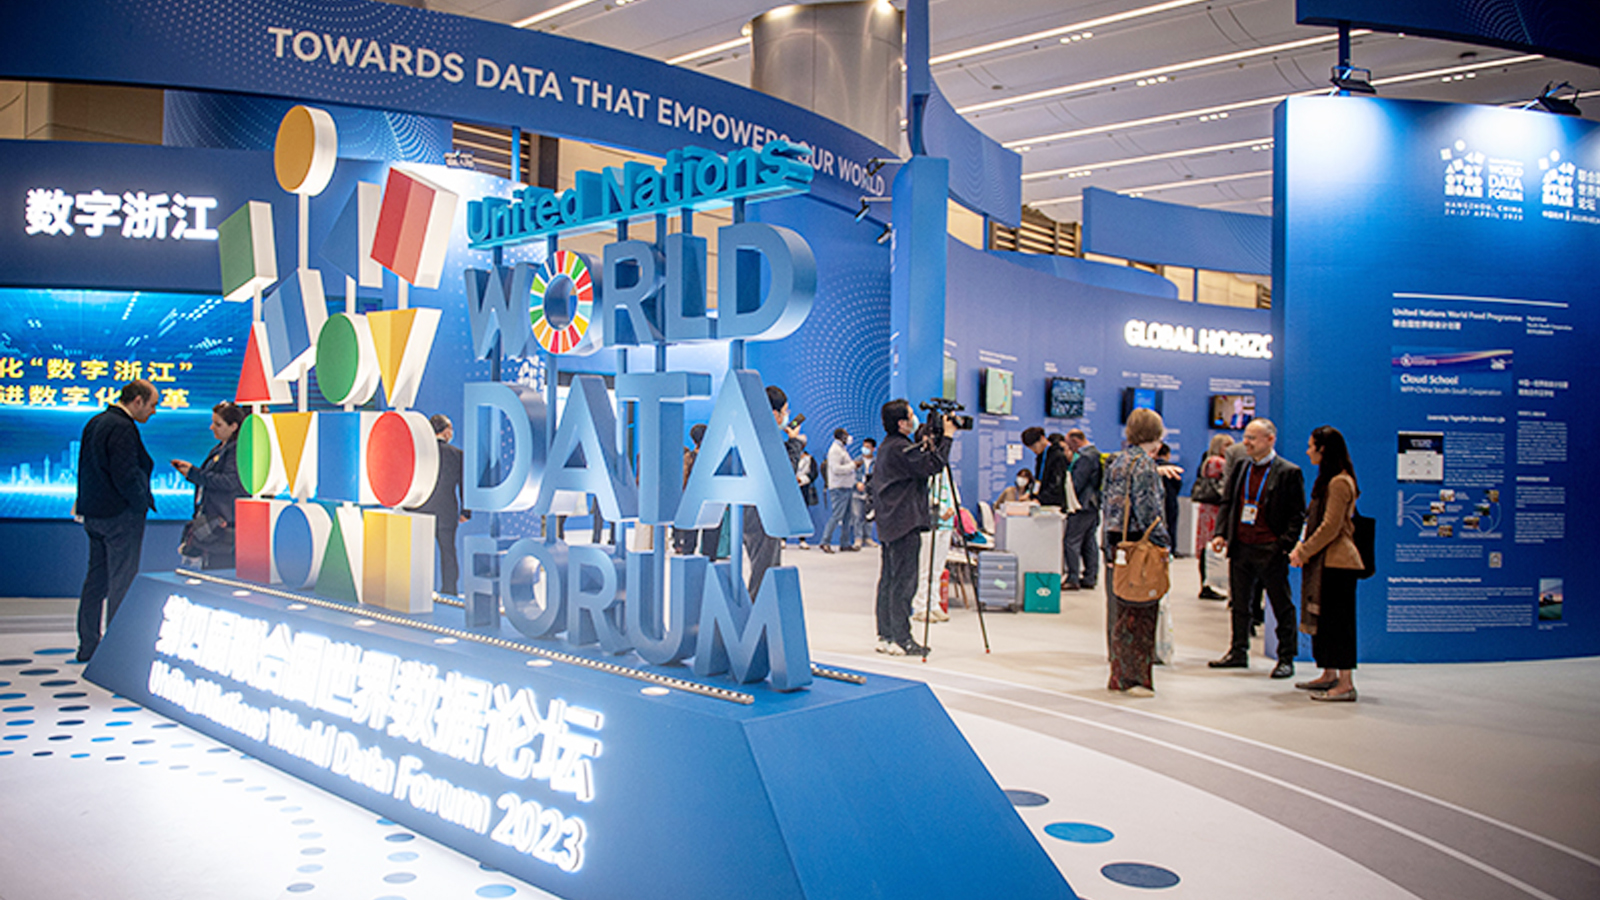 第四届联合国世界数据论坛在杭州举办